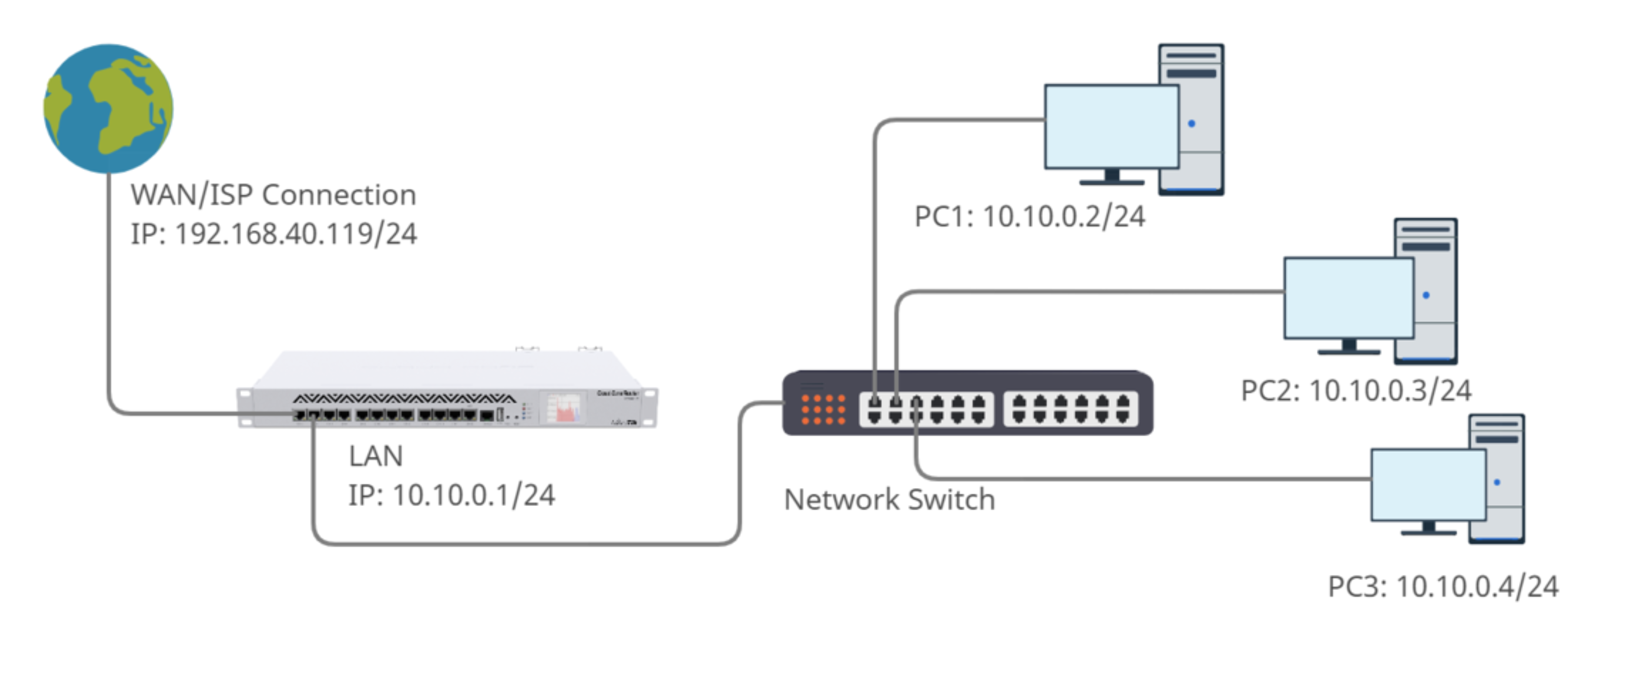 mikrotik routeros 7 stable